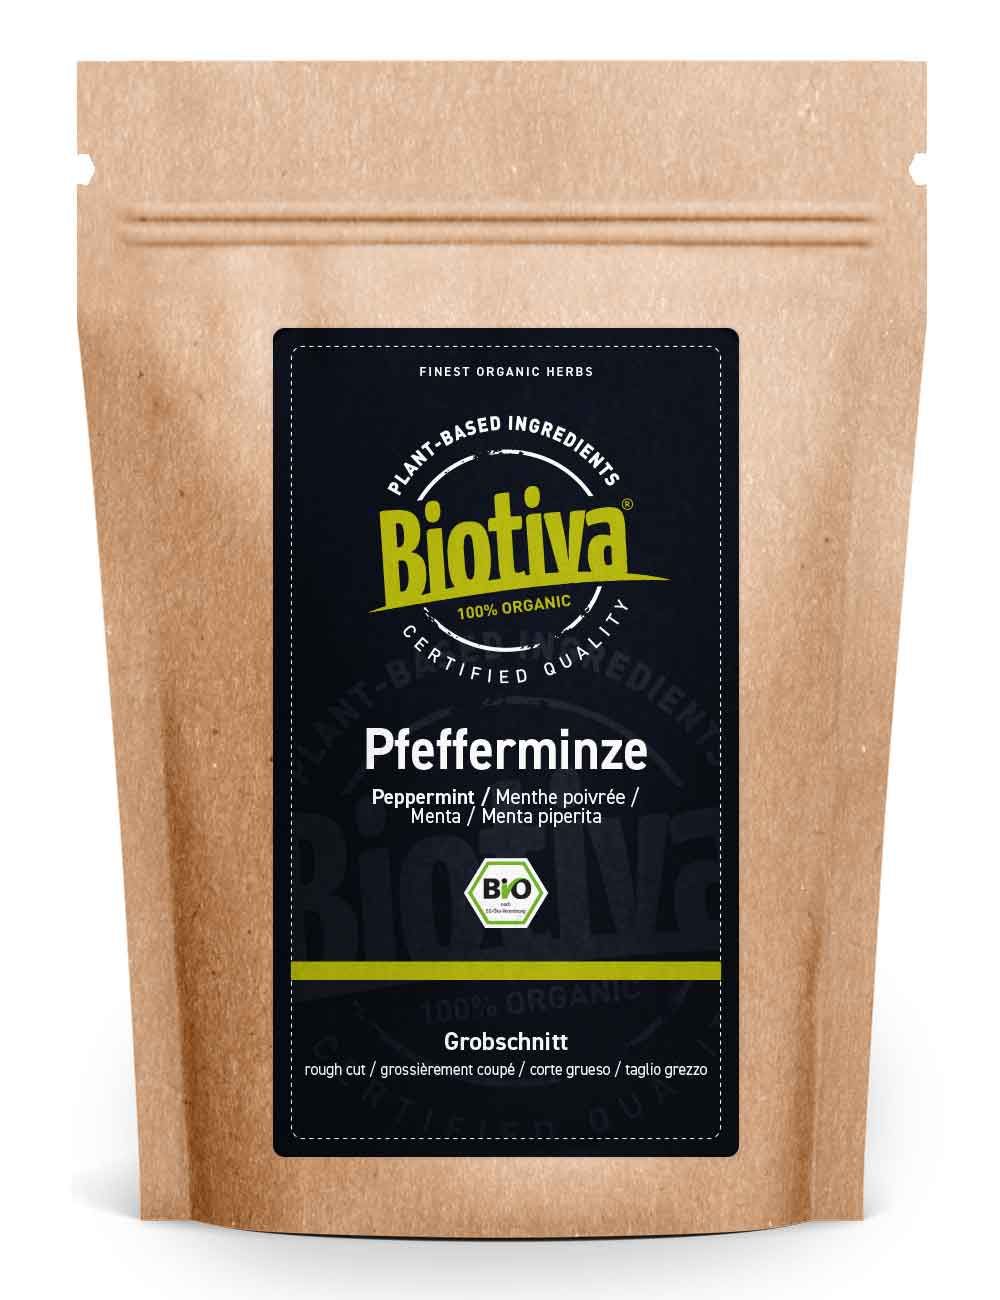 Biotiva Pfefferminz Tee Grobschnitt Bio